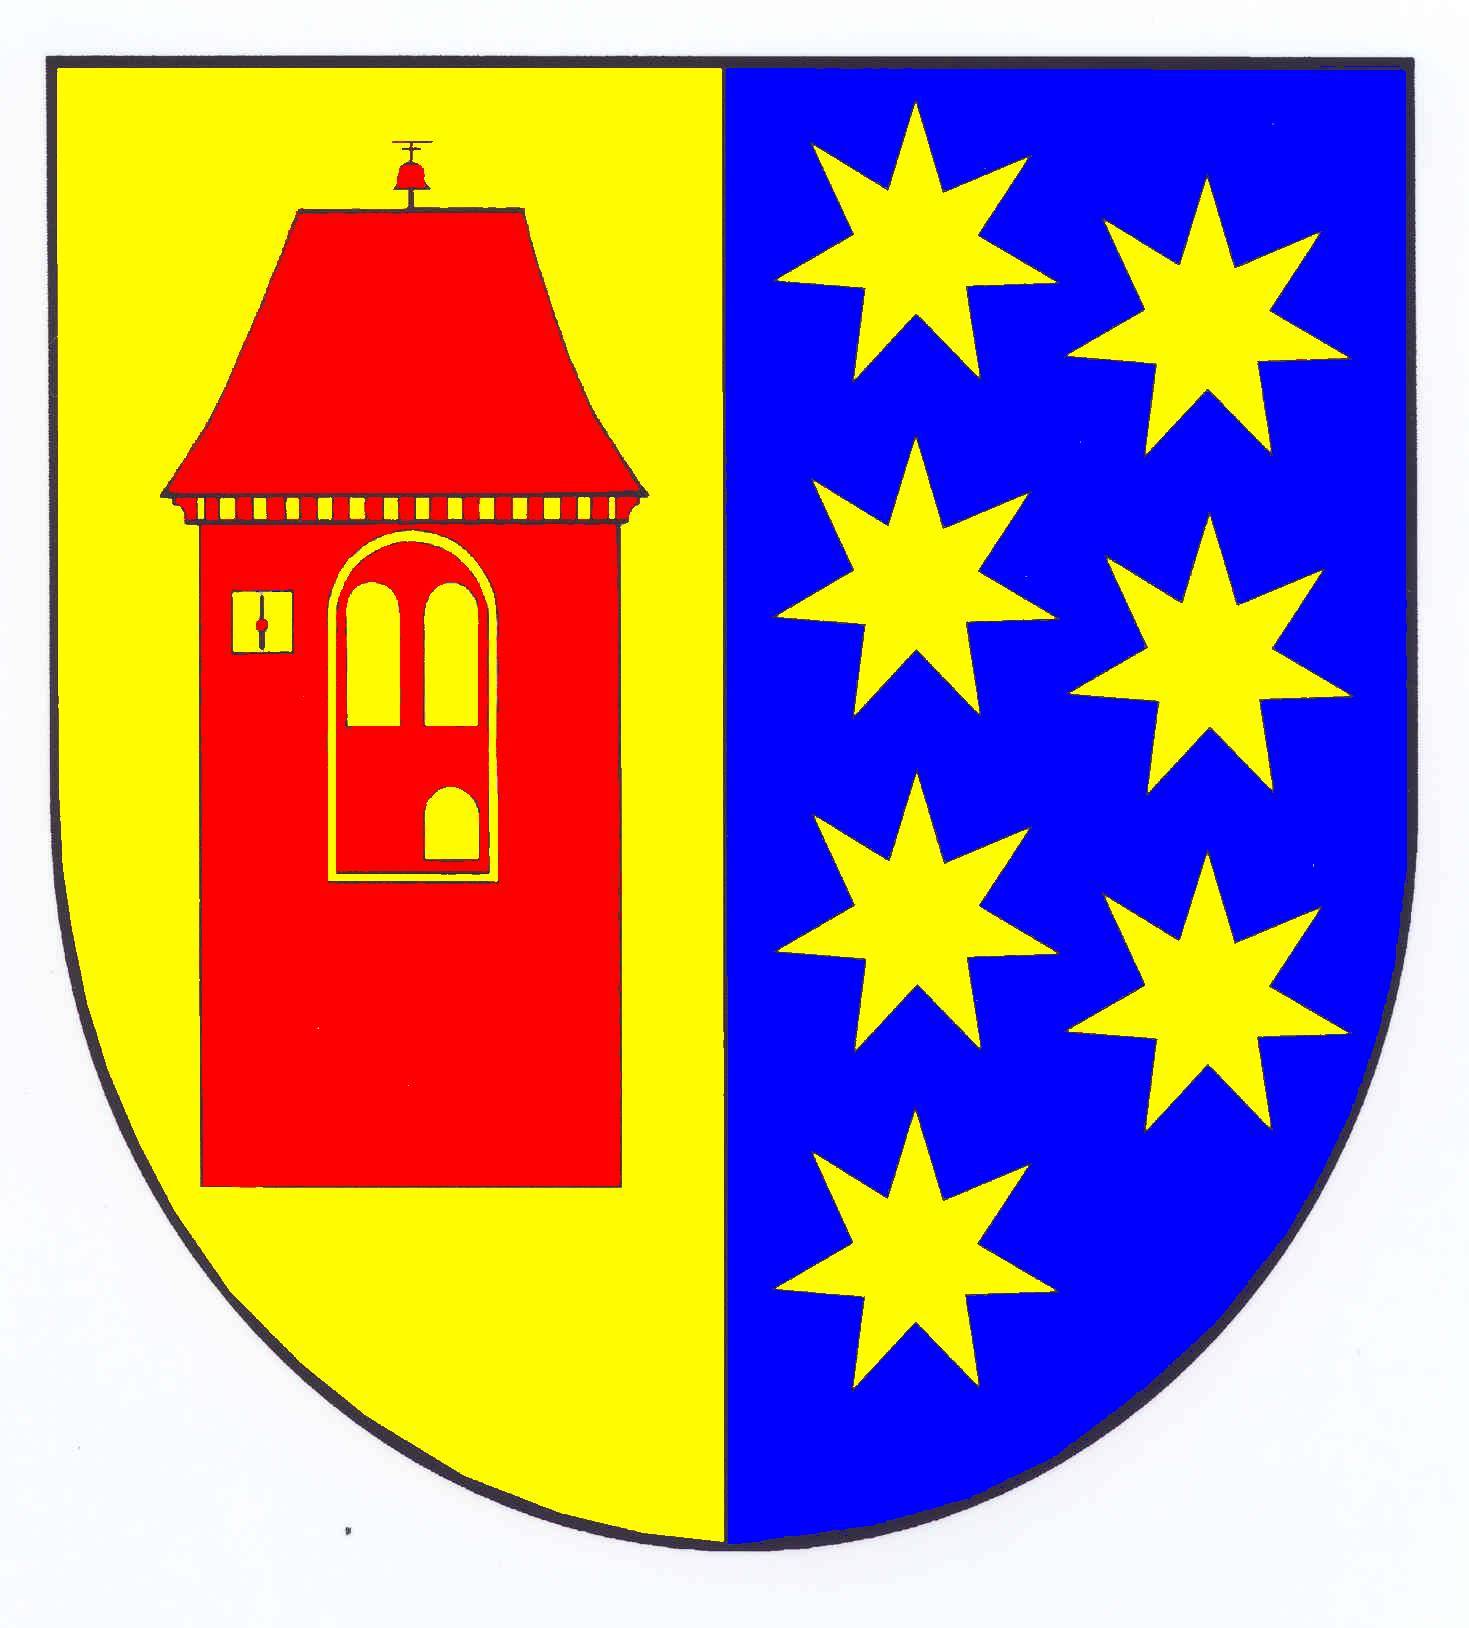 Wappen Amt Lensahn, Kreis Ostholstein